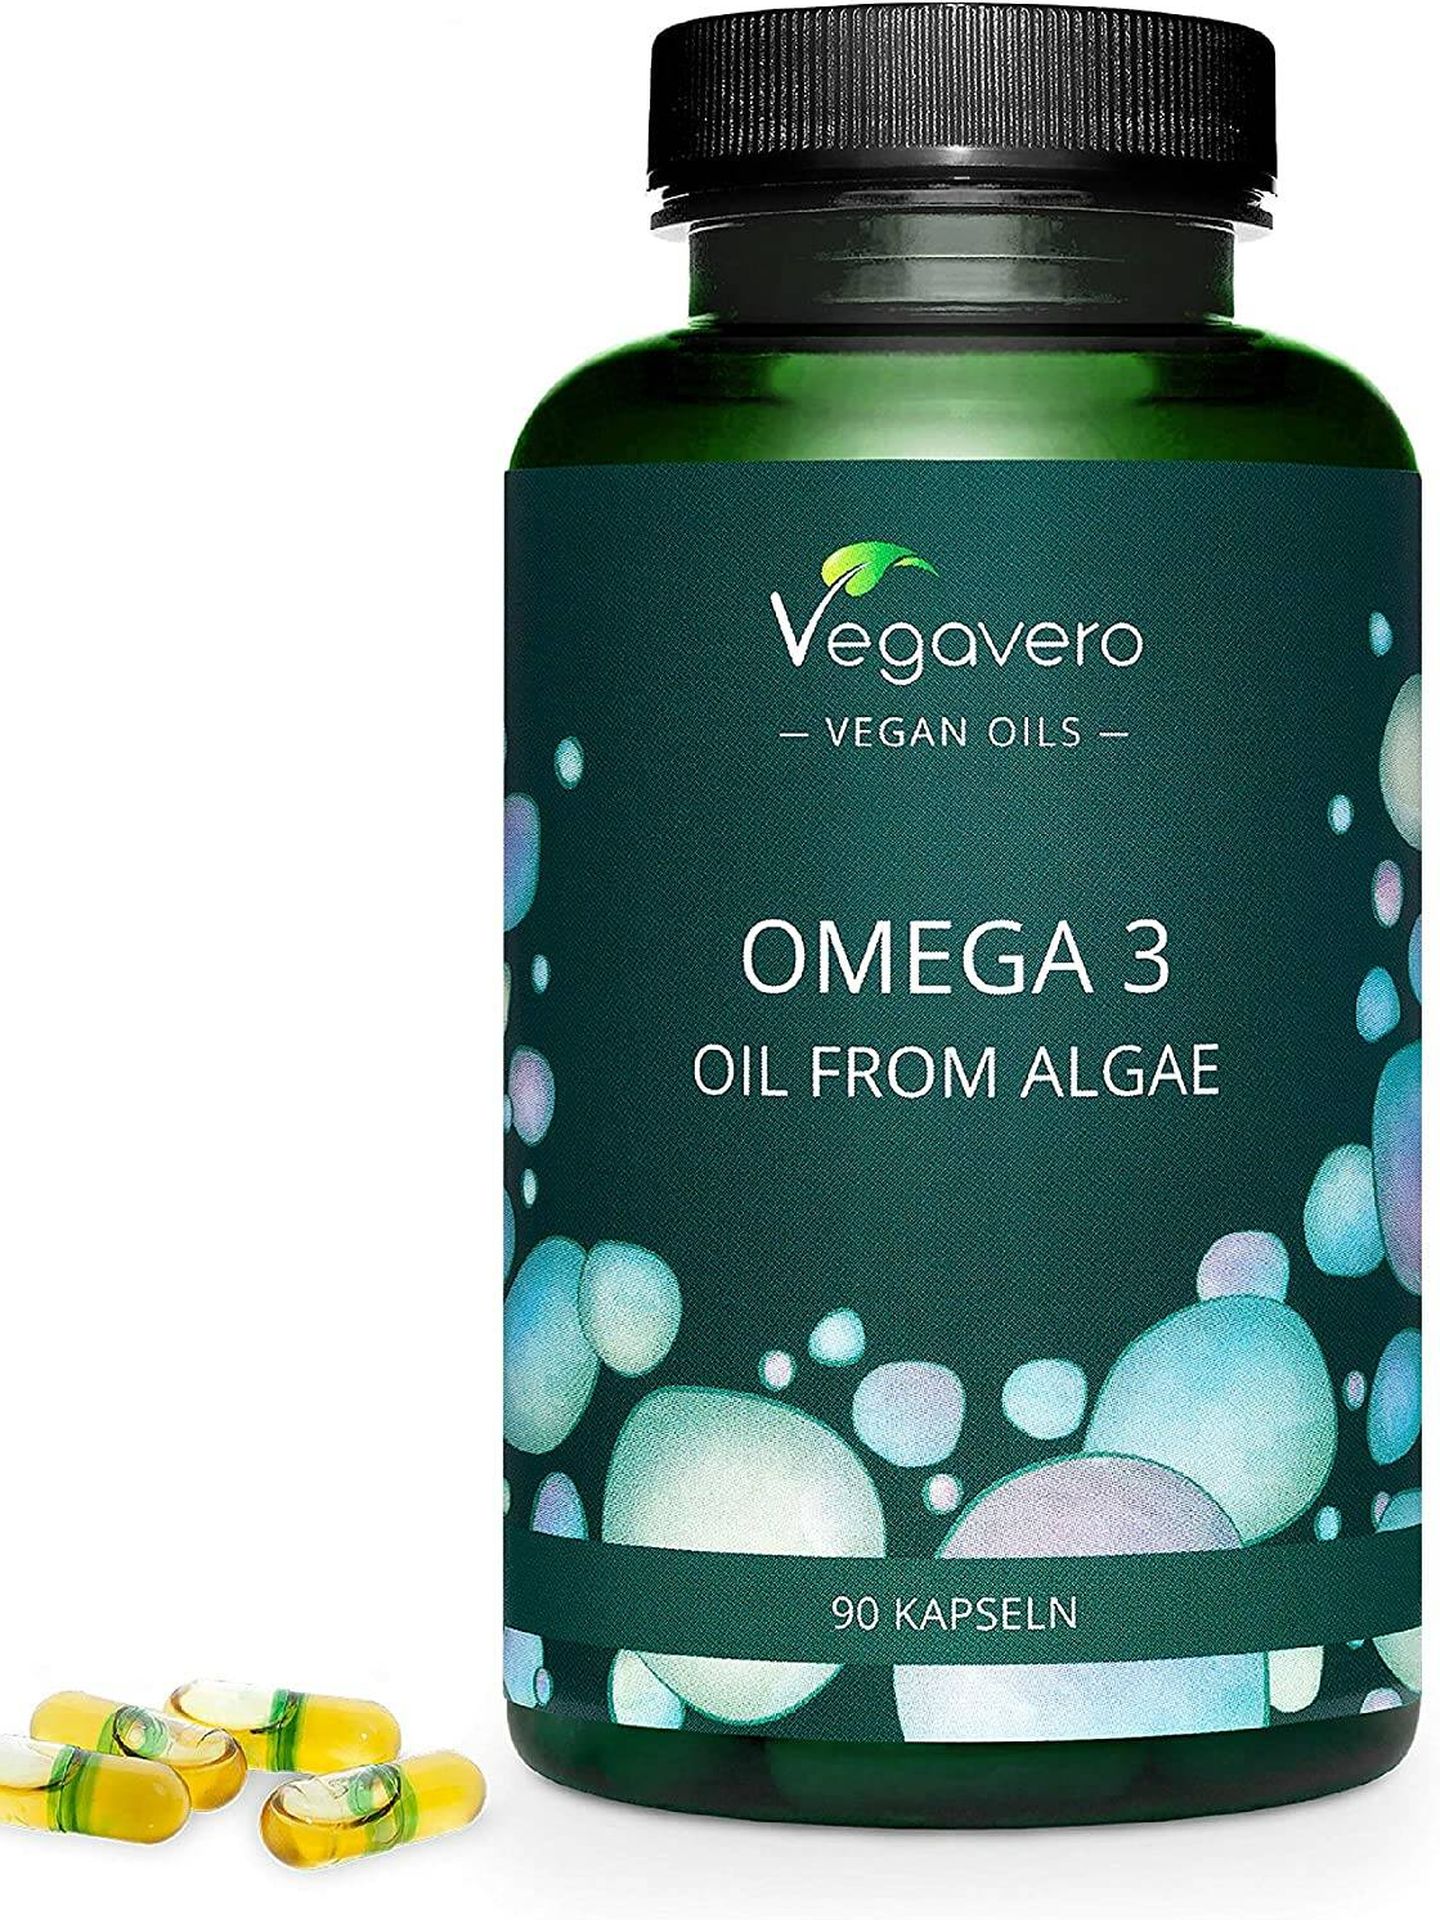 Vegavero Omega 3 a la venta en Amazon. (Cortesía)